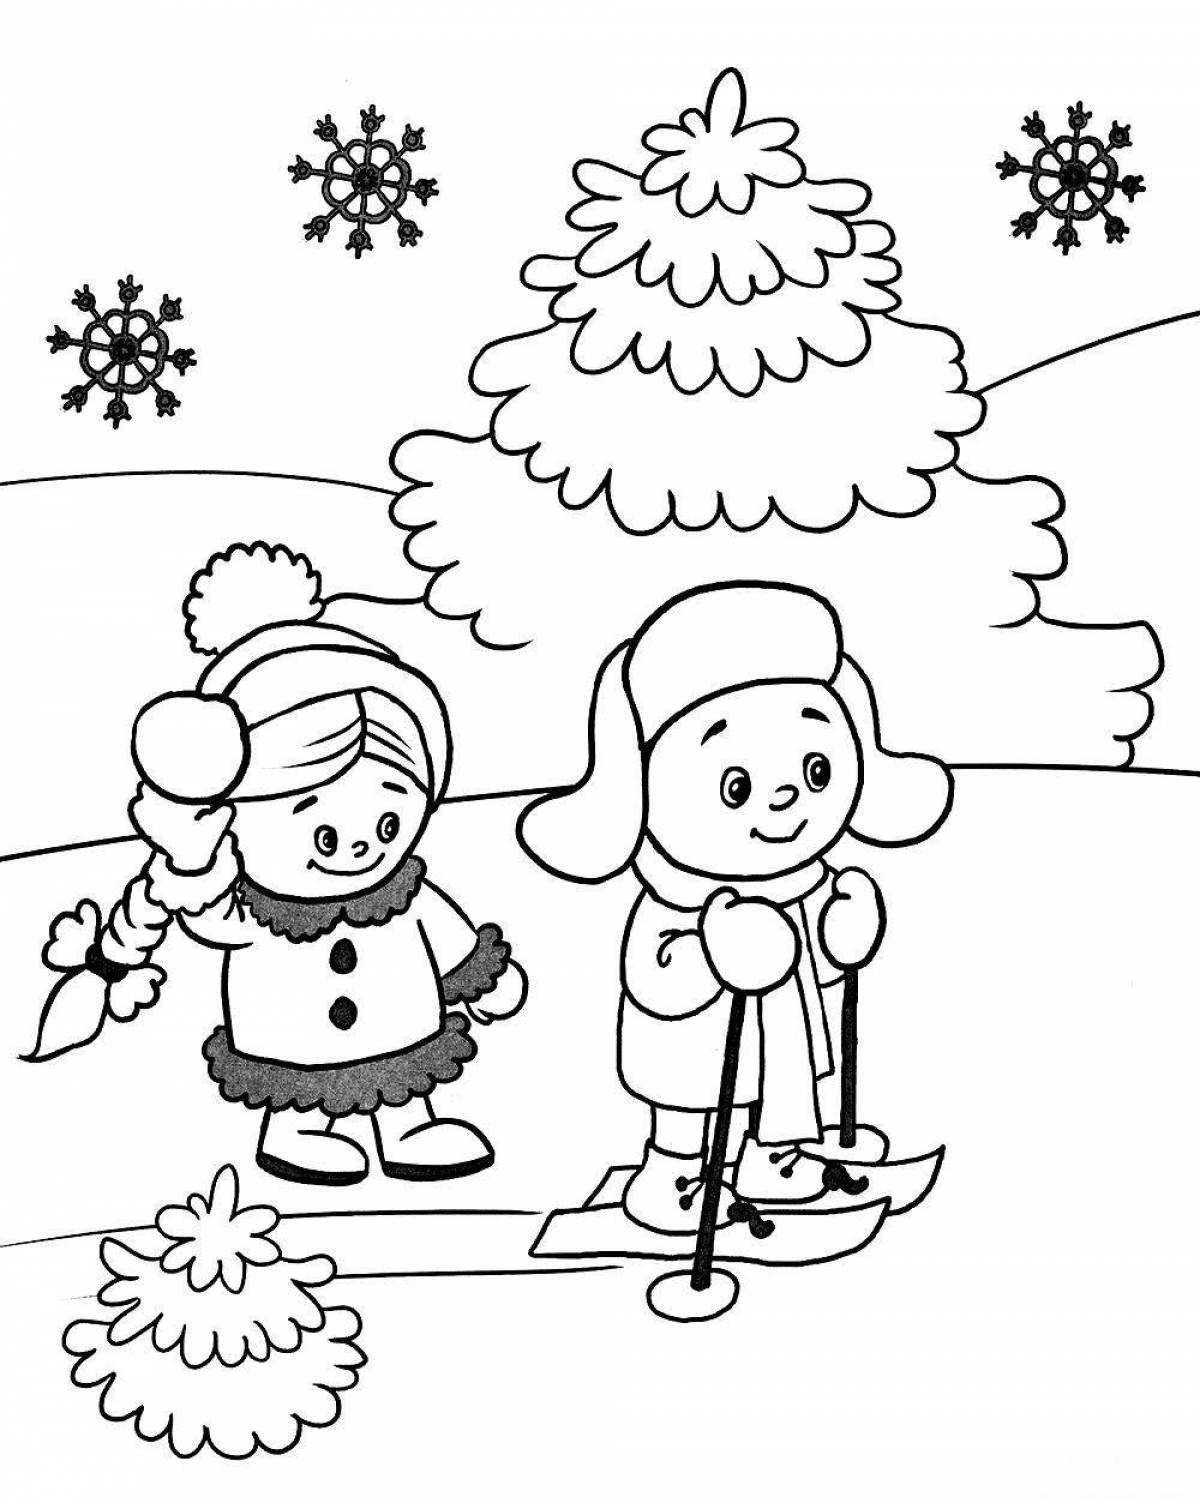 Увлекательная зимняя раскраска для детей